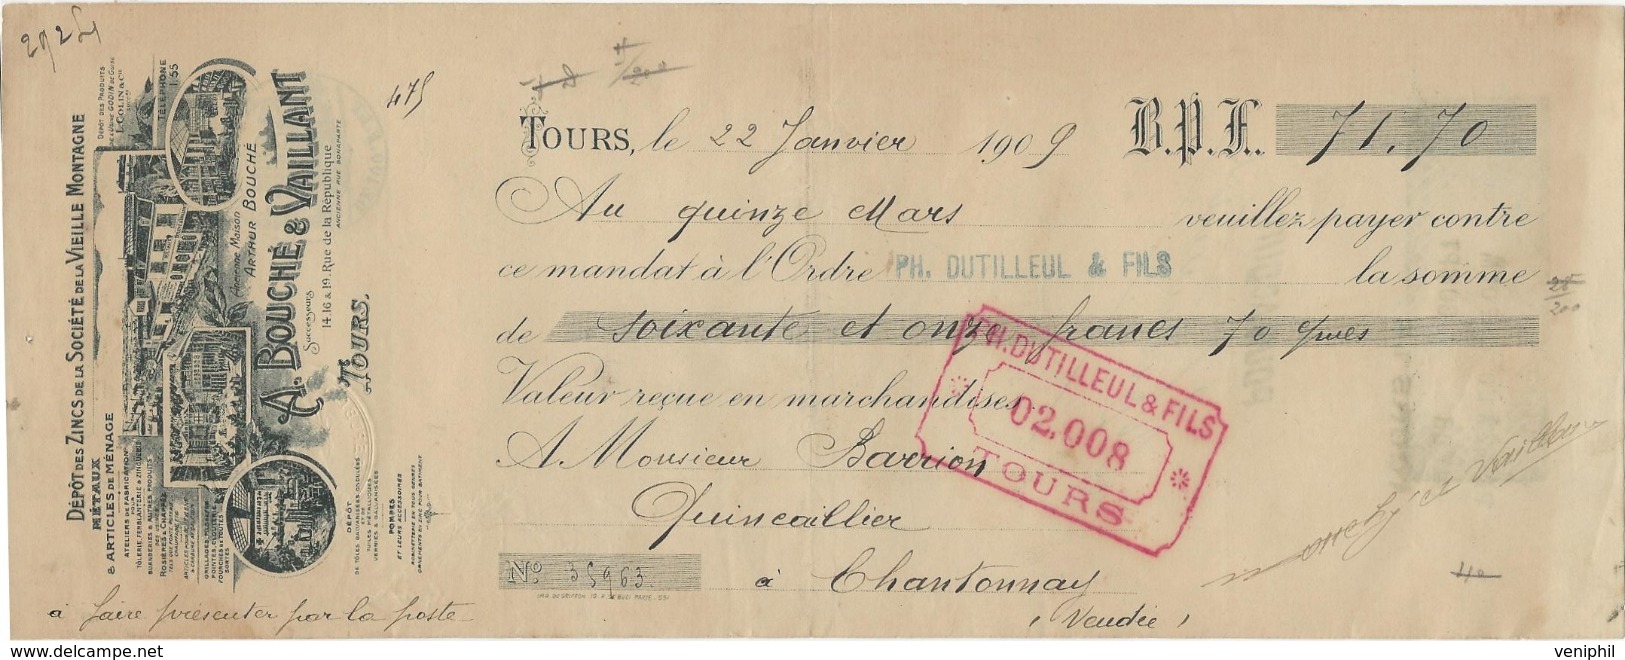 LETTRE DE CHANGE ILLUSTREE -A. BOUCHE ET VAILLANT - DEPOT DE ZING DE LA VIEILLE MONTAGNE -TOURS -1909 - Cambiali